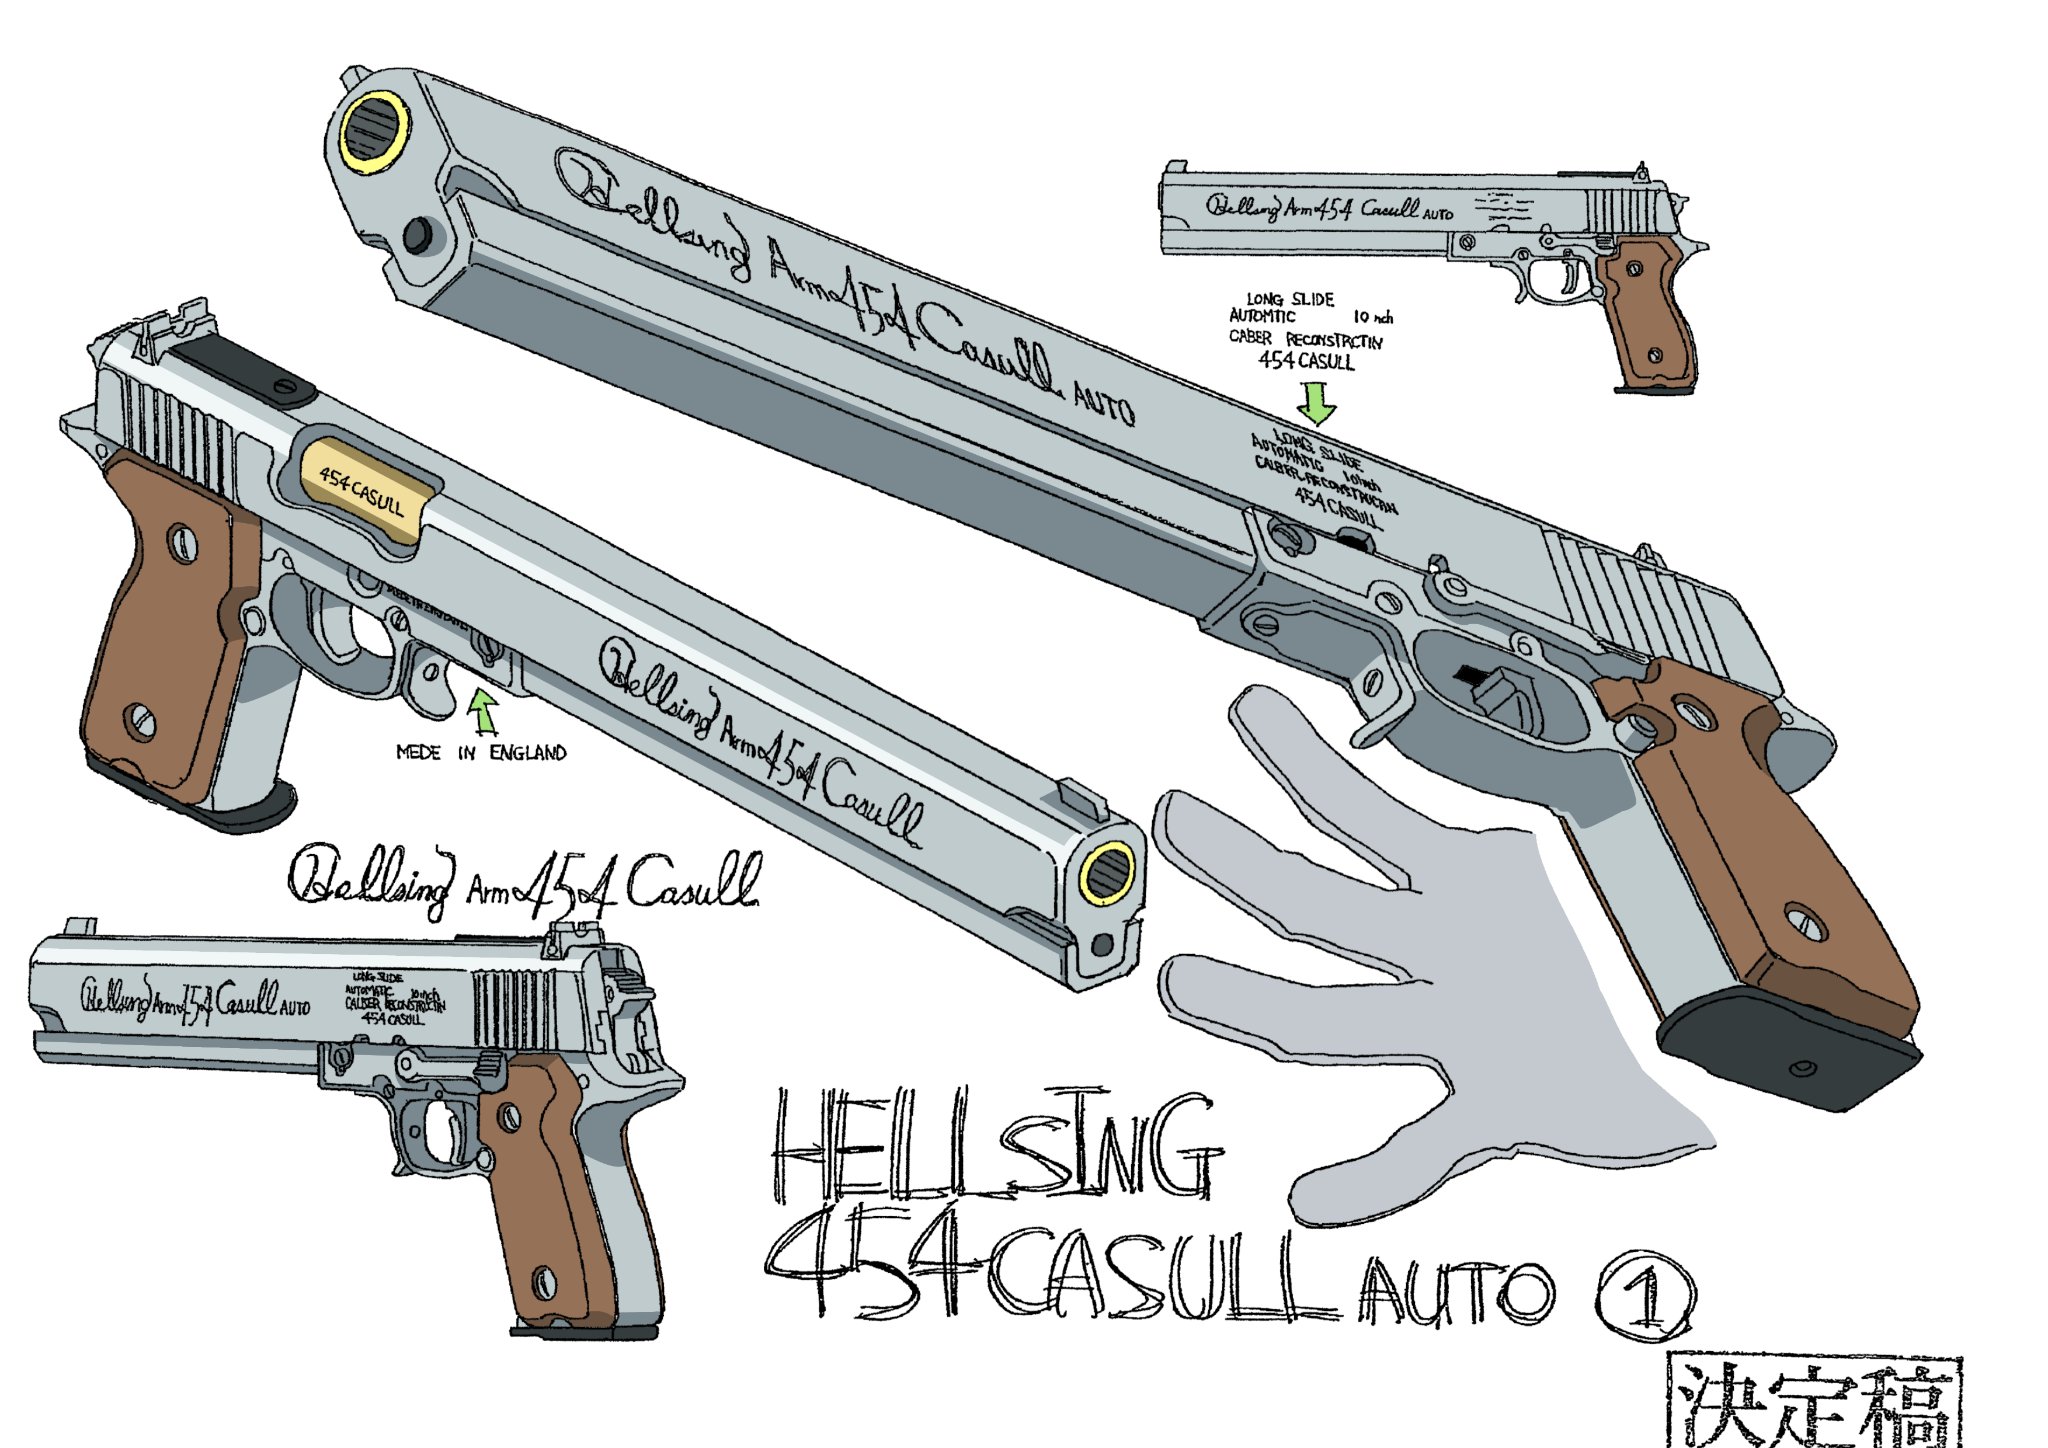 Settei Guy on X: Luke and Jan Anime: Hellsing 2001 Character designs by:  @muratatoshiharu #hellsing #hellsingultimate #settei #modelsheets  #hellsing2001  / X